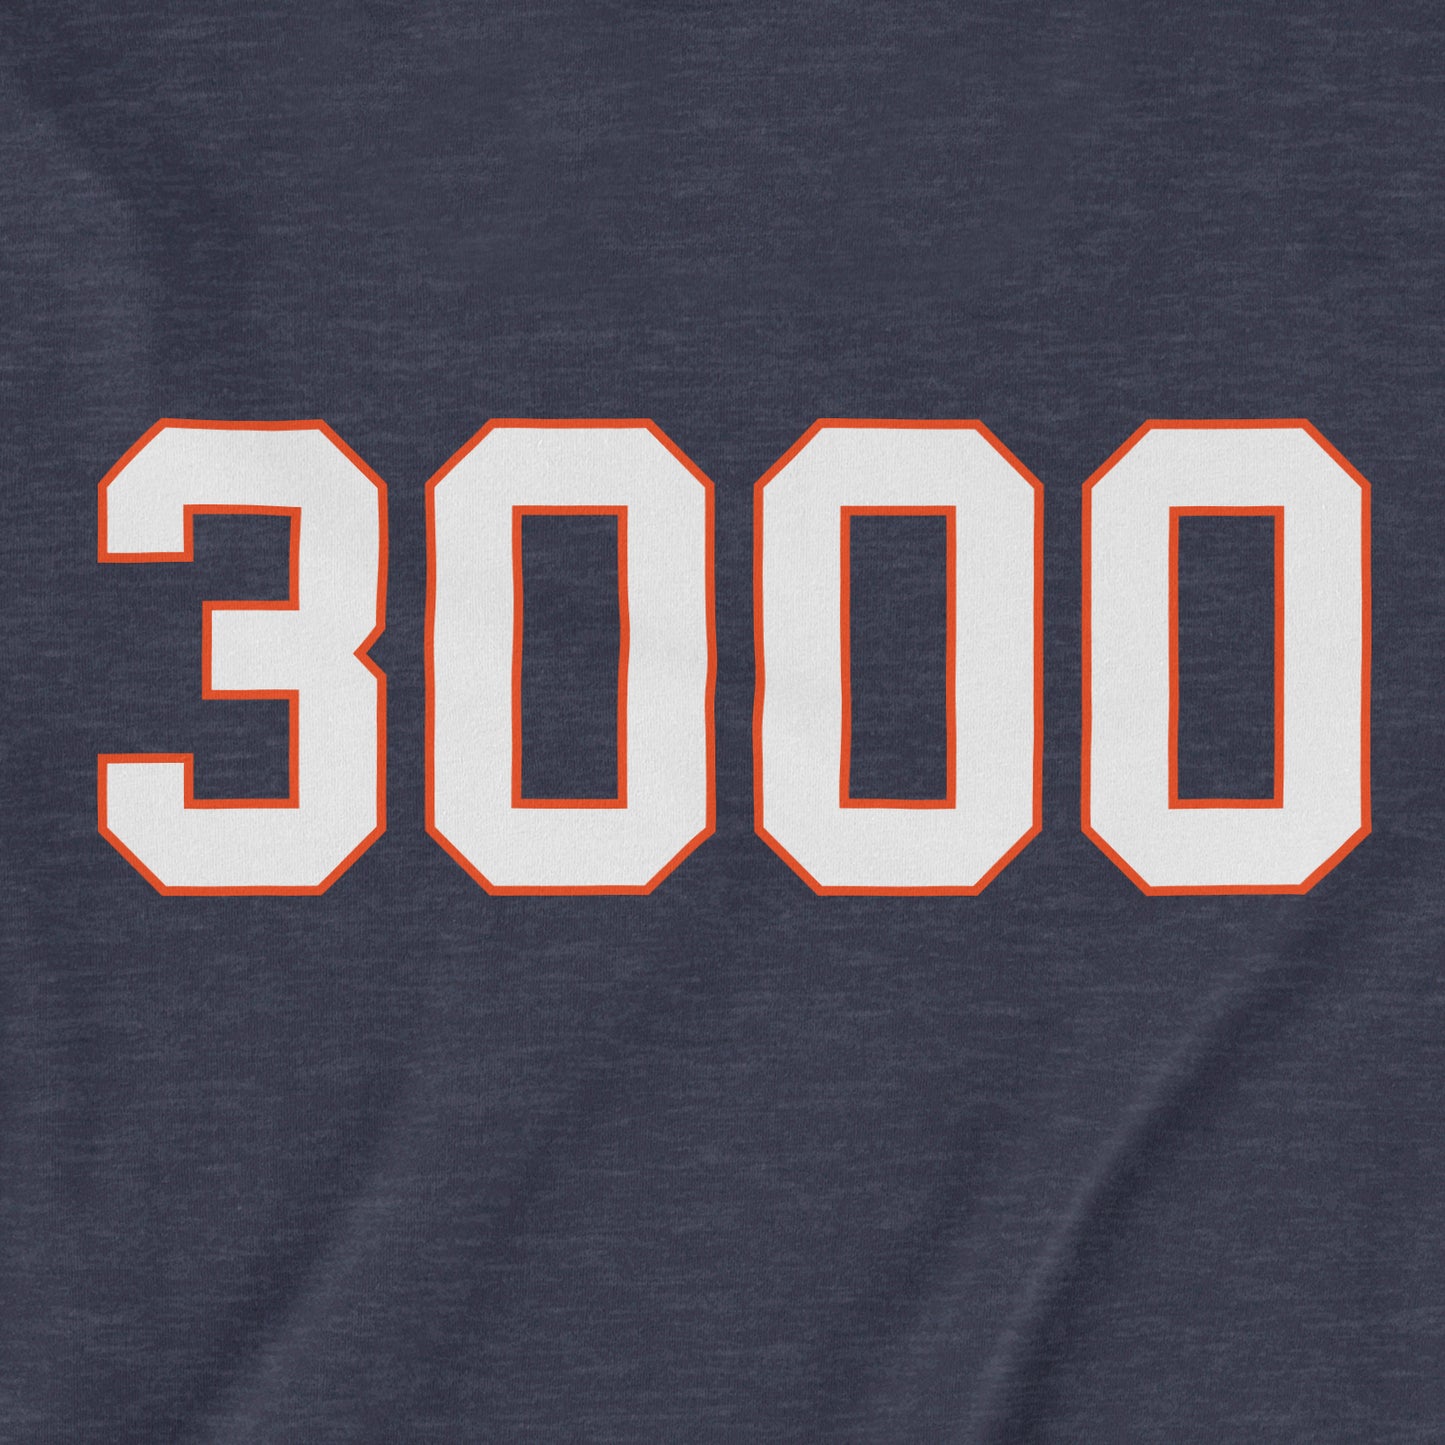 3,000 | T-Shirt